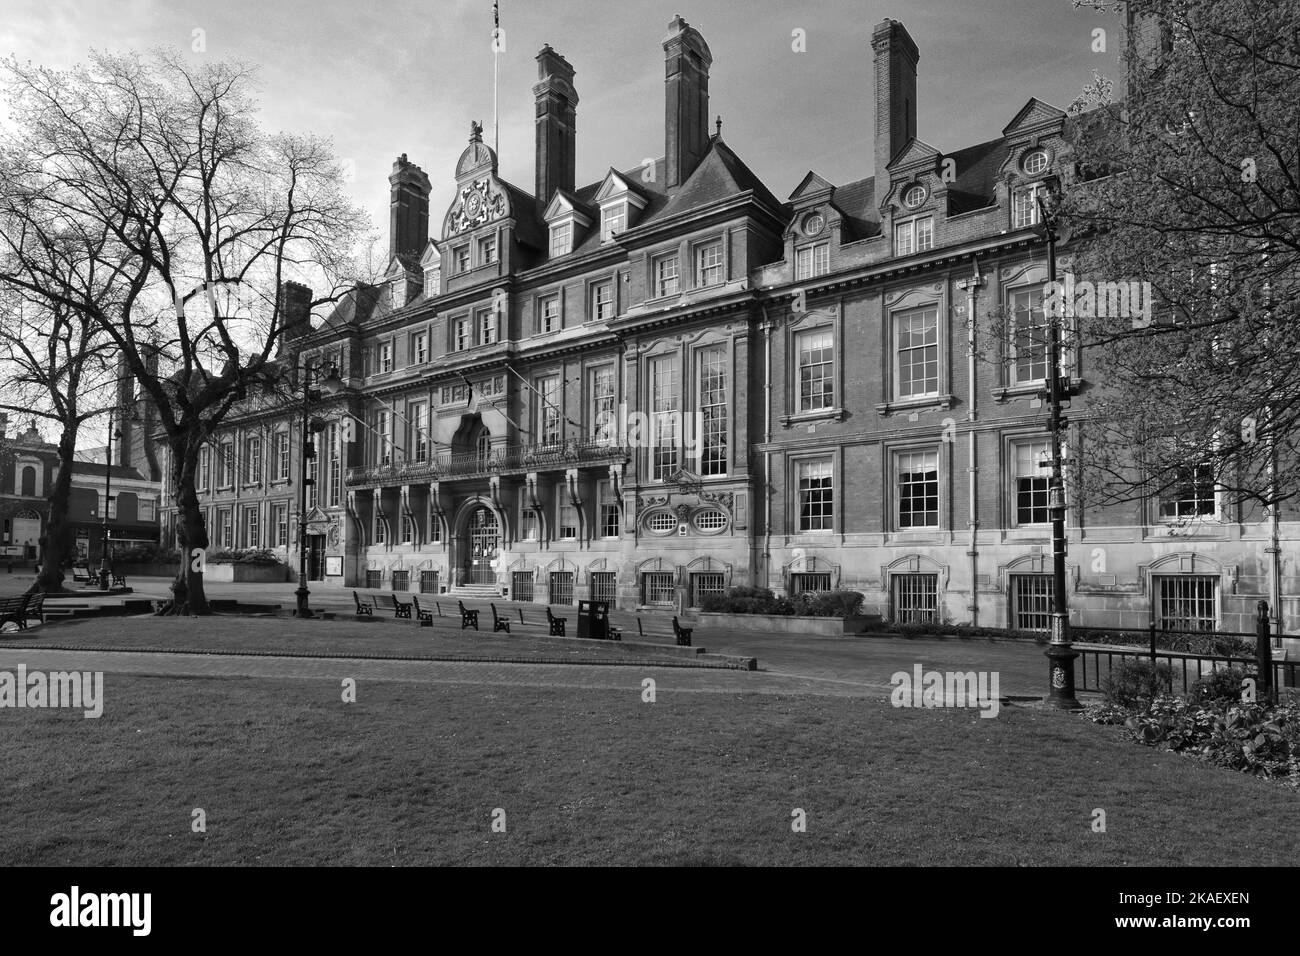 Das Rathausgebäude in den Rathausplatz-Gärten, Leicester City, Leicestershire, England; Großbritannien Stockfoto